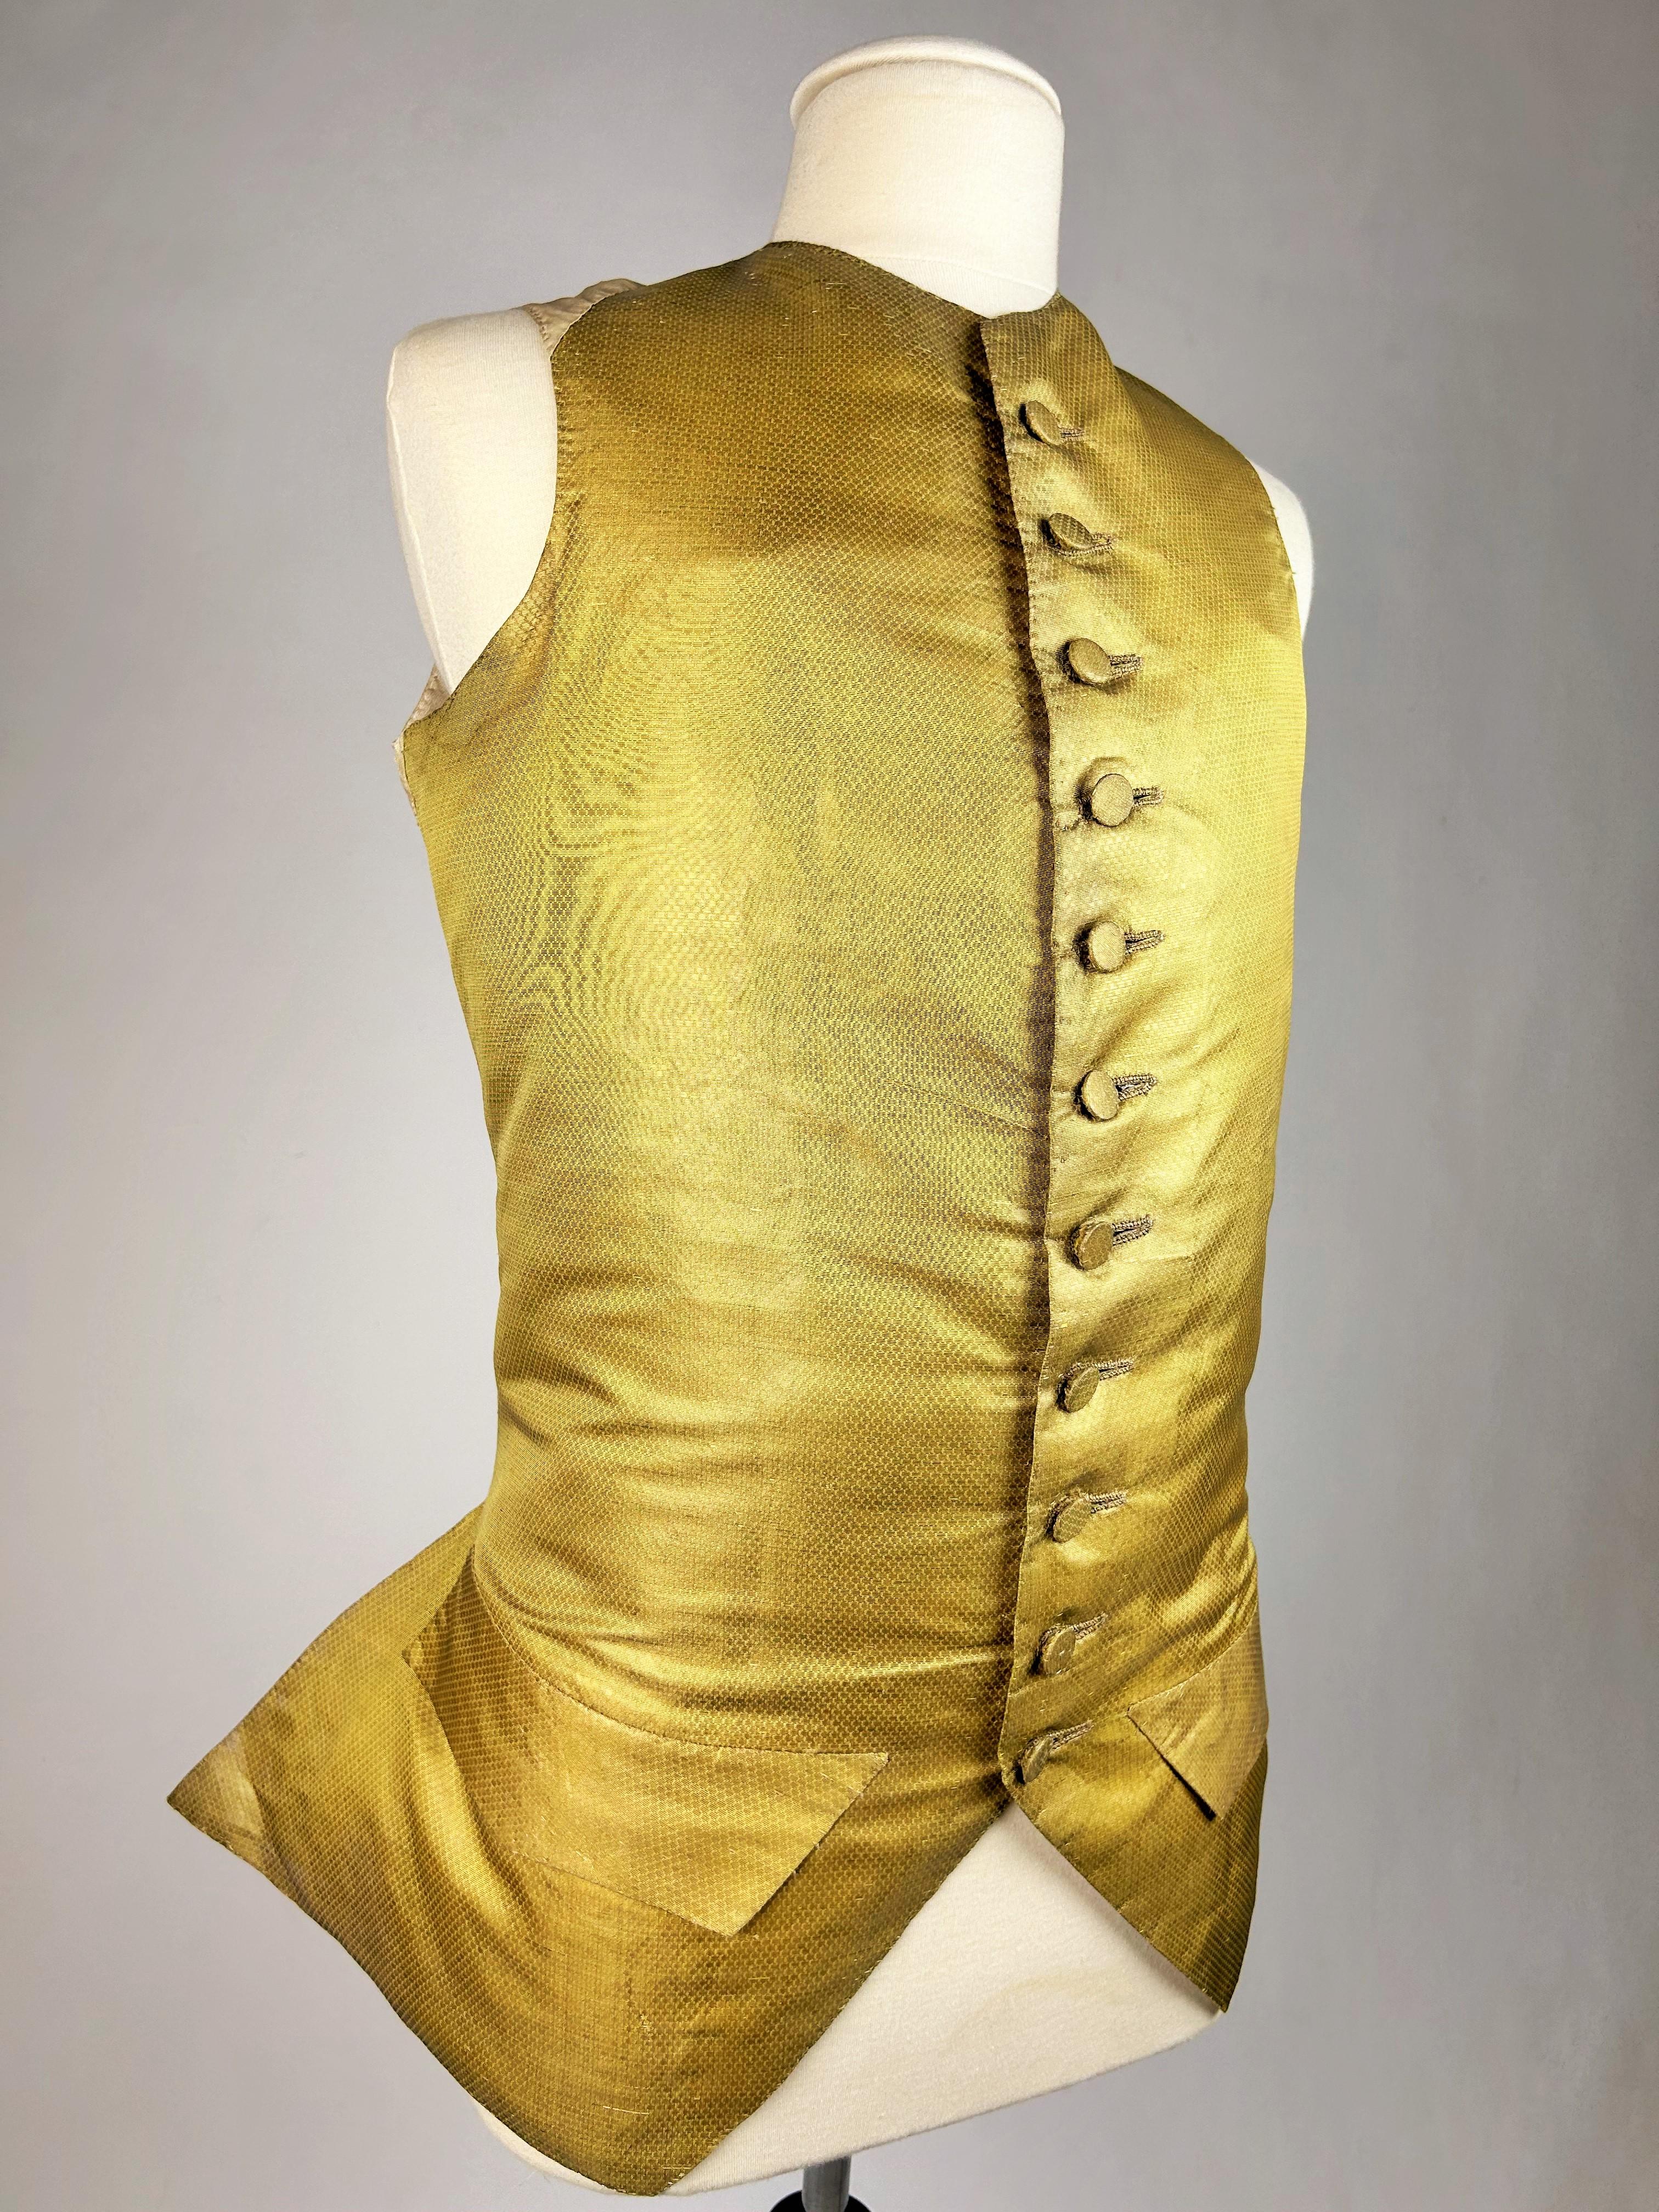 CIRCA 1770
Frankreich

Tief ausgeschnittene Weste aus goldgesponnenem Stoff mit Miniaturrauten aus dem Ende der Periode Louis XV. Taillierter Schnitt, Rundhalsausschnitt, komplett mit Knöpfen aus demselben MATERIAL. Rücken und Futter aus